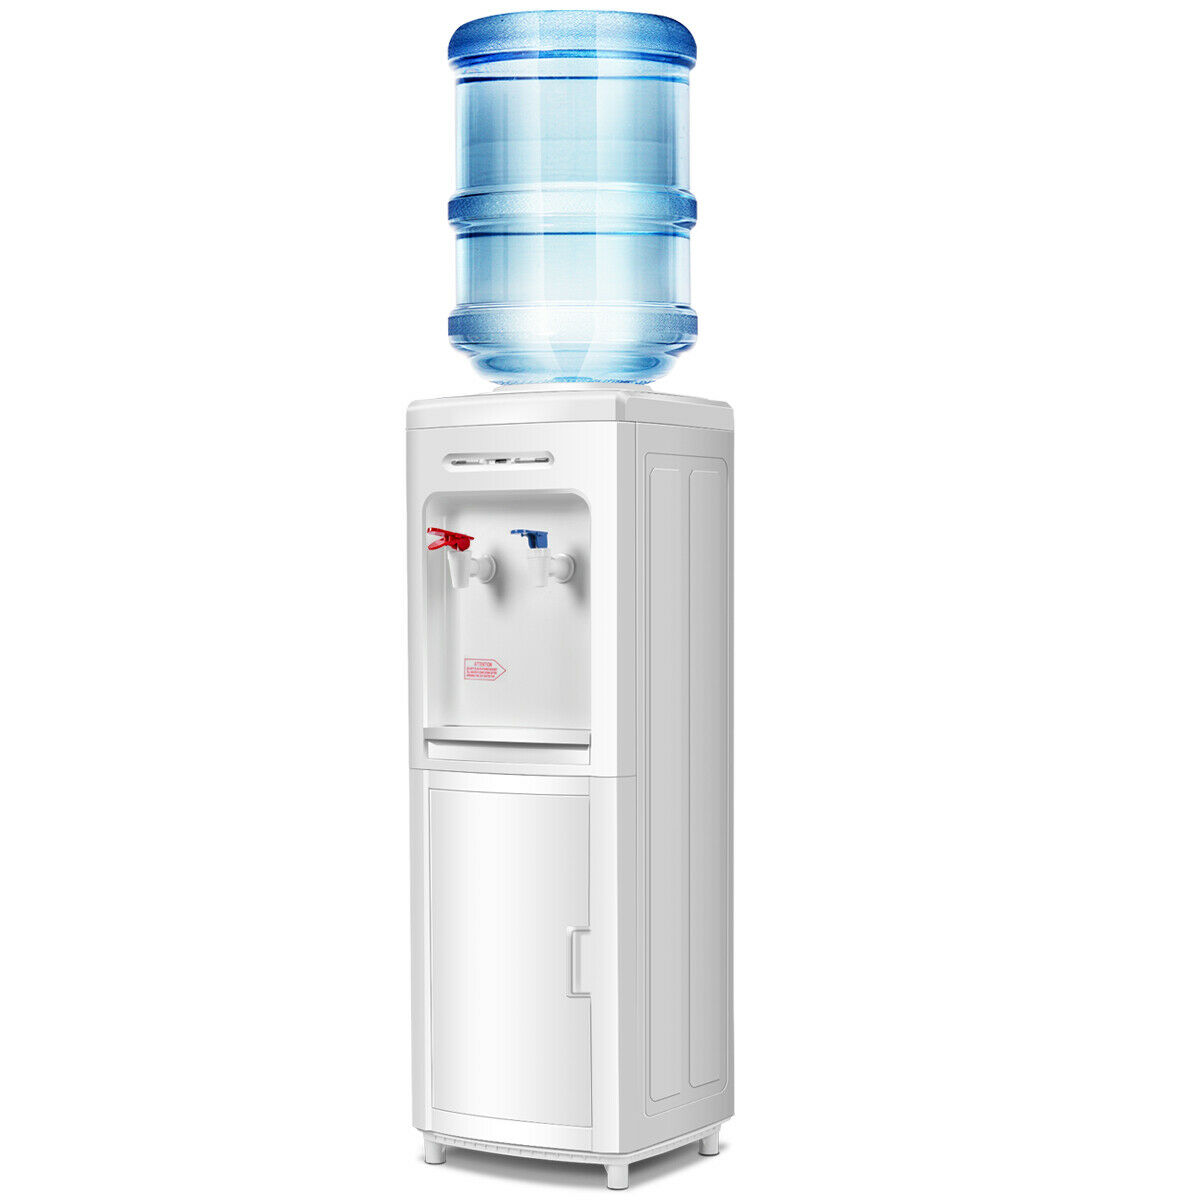 Combattez la chaleur : achetez le distributeur d'eau chaude et froide Panasonic NF-28M dès aujourd'hui !